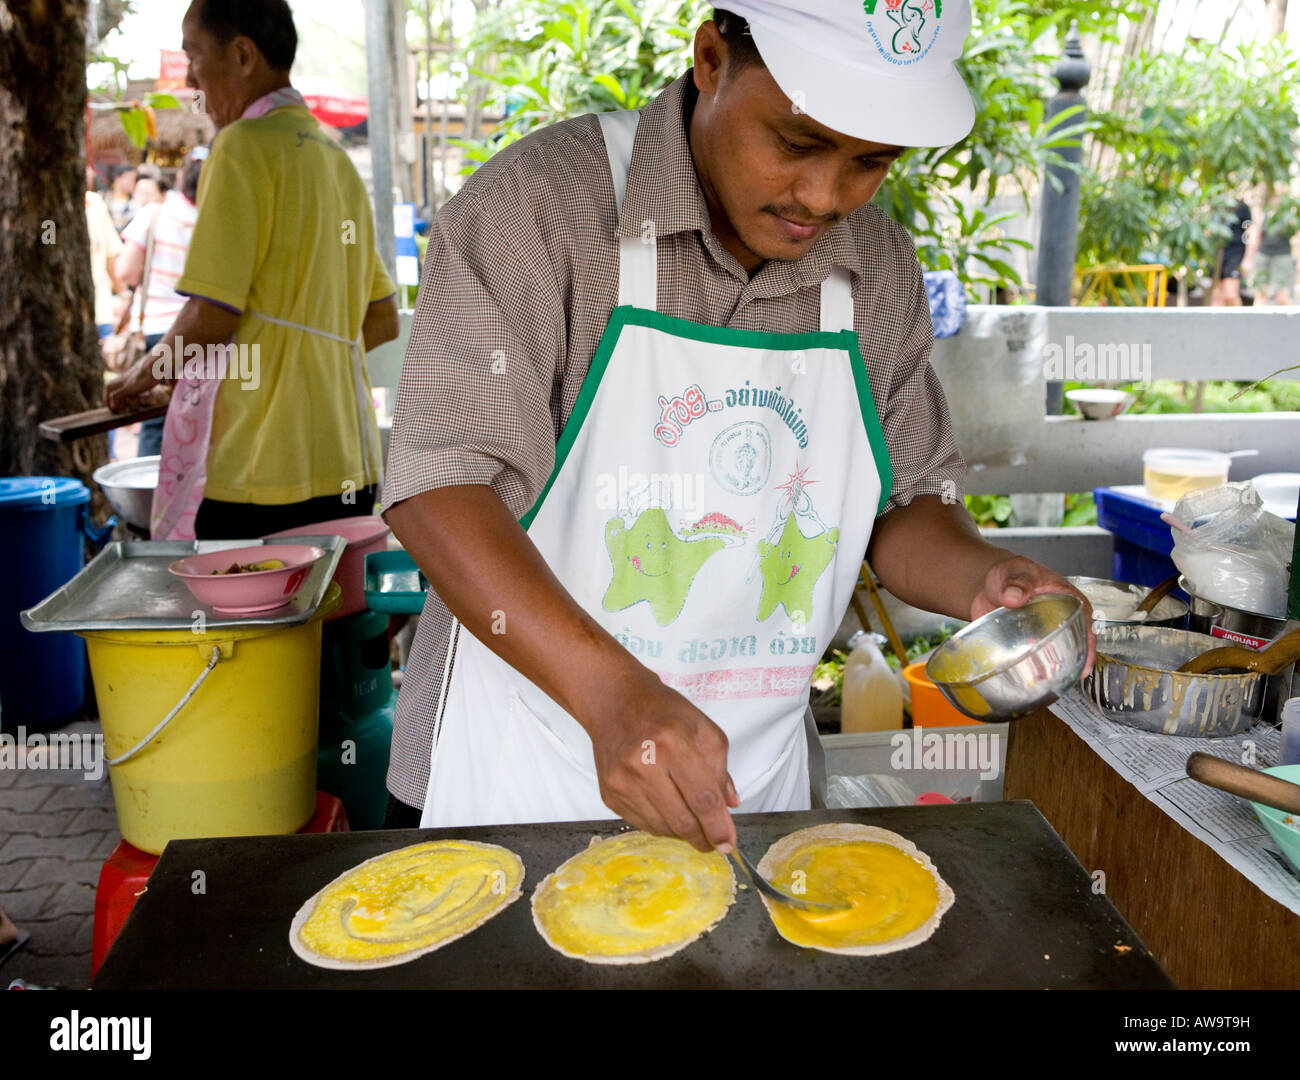 Thai Man préparant les aliments dans un marché de Rue de Bangkok Thaïlande Asie du sud-est Banque D'Images